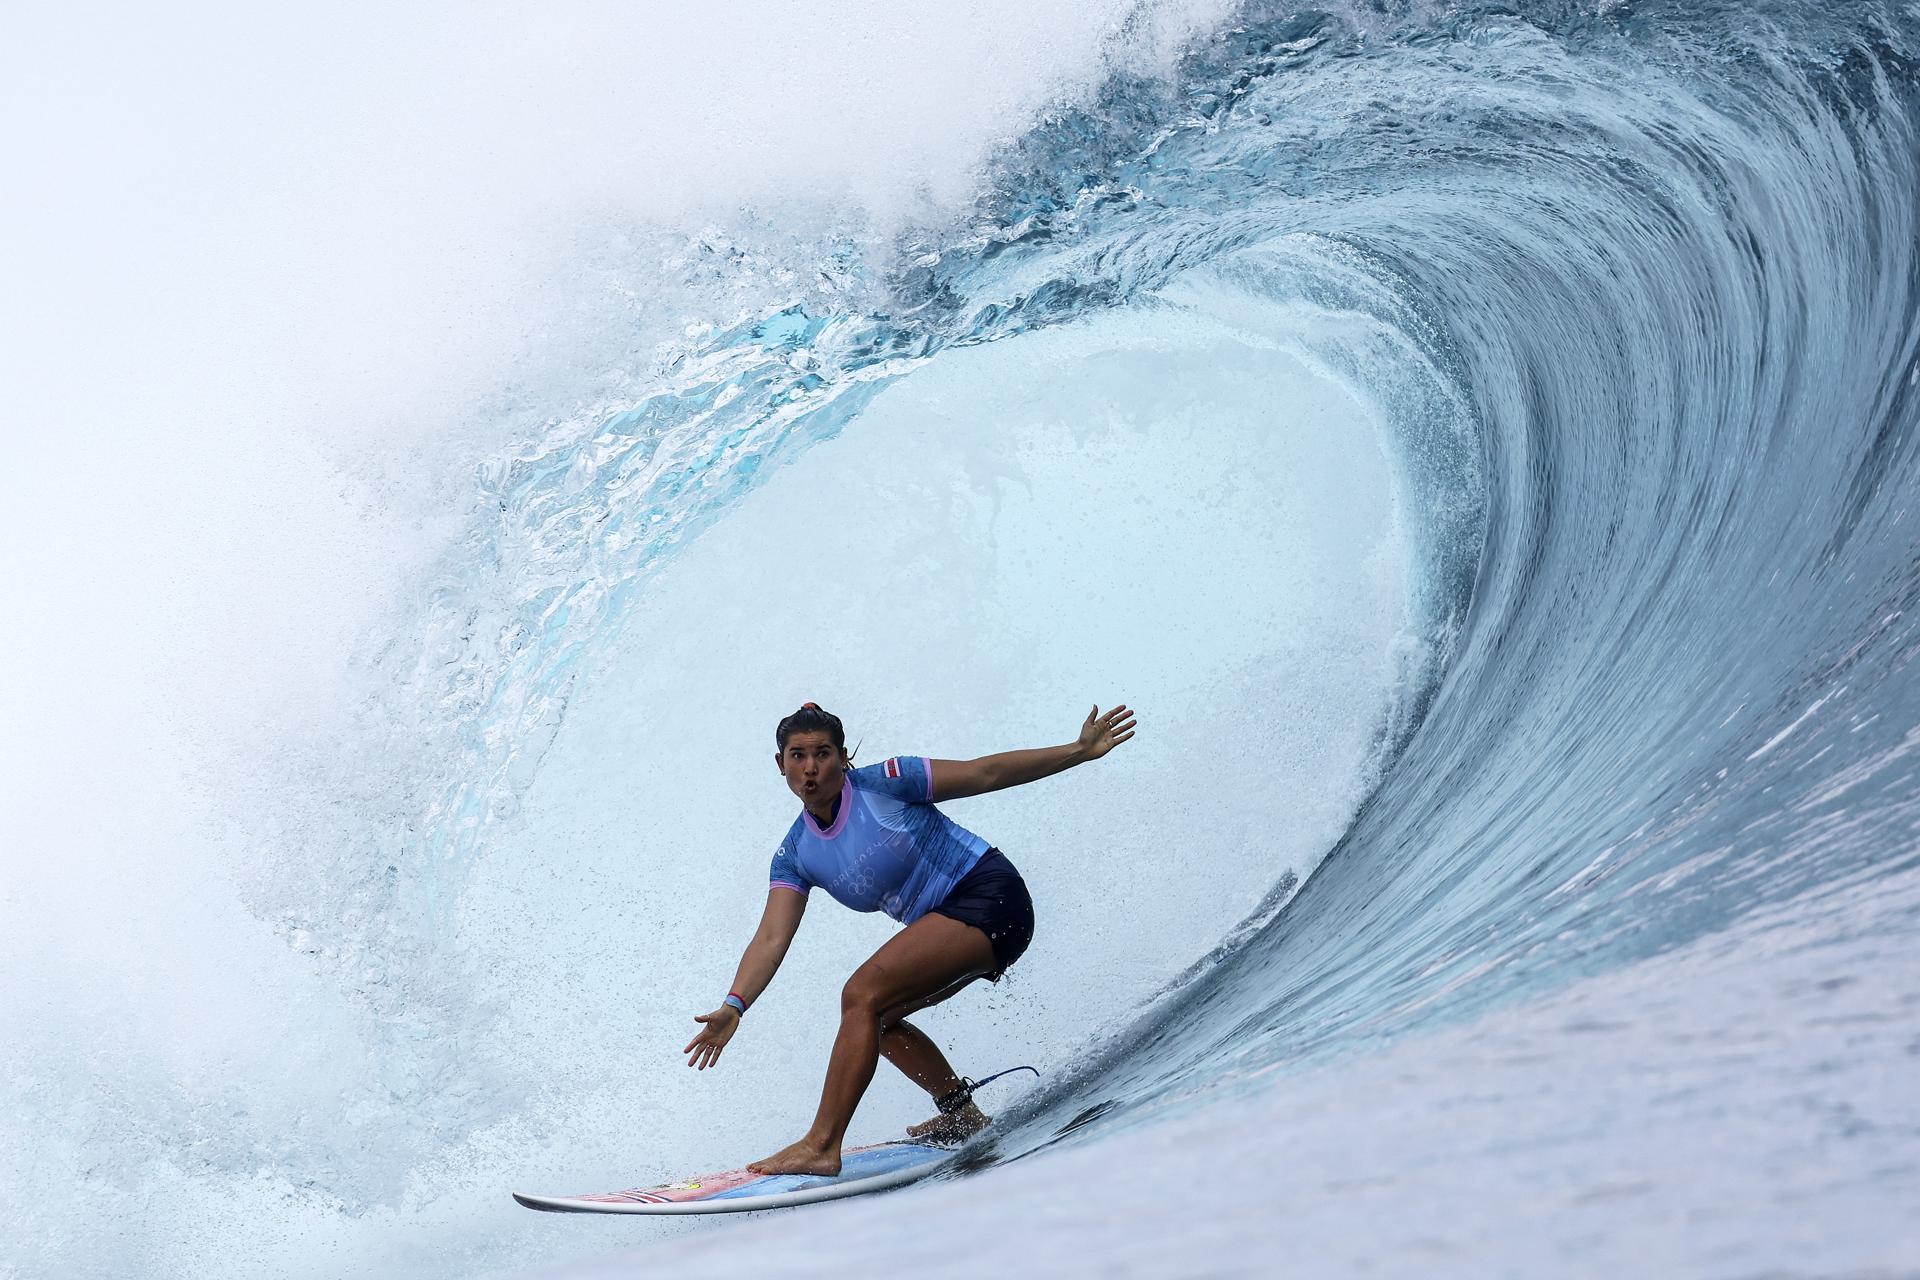 Les proves de surf han començat a l'altra punta del món, a Tahití